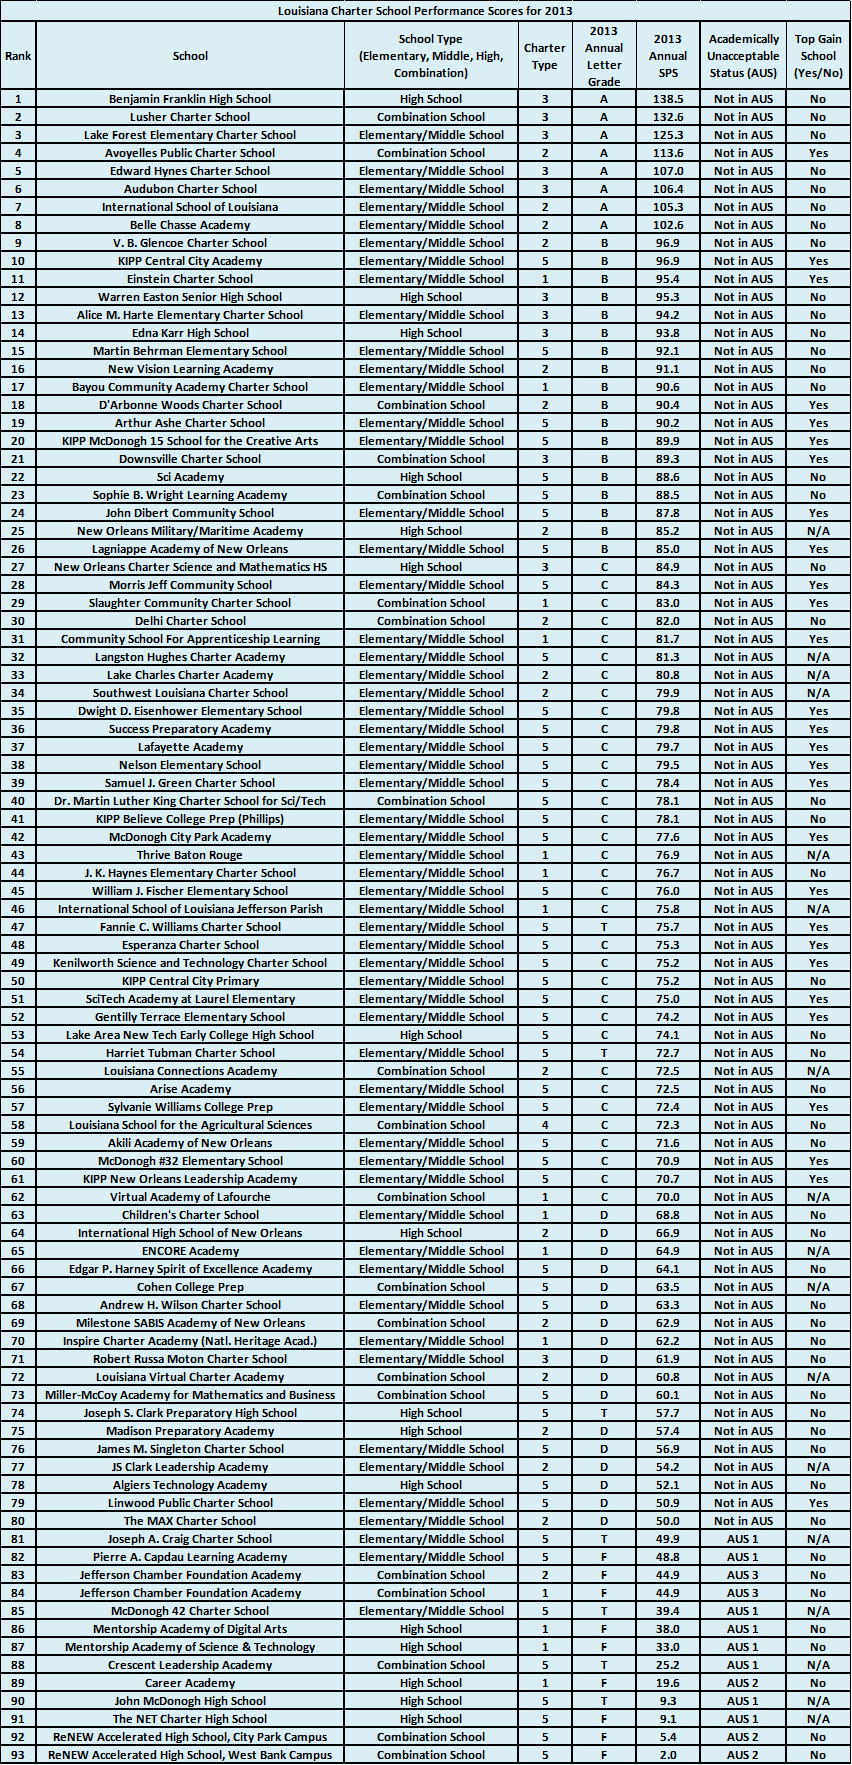 Louisiana SPS rankings 2013 redo